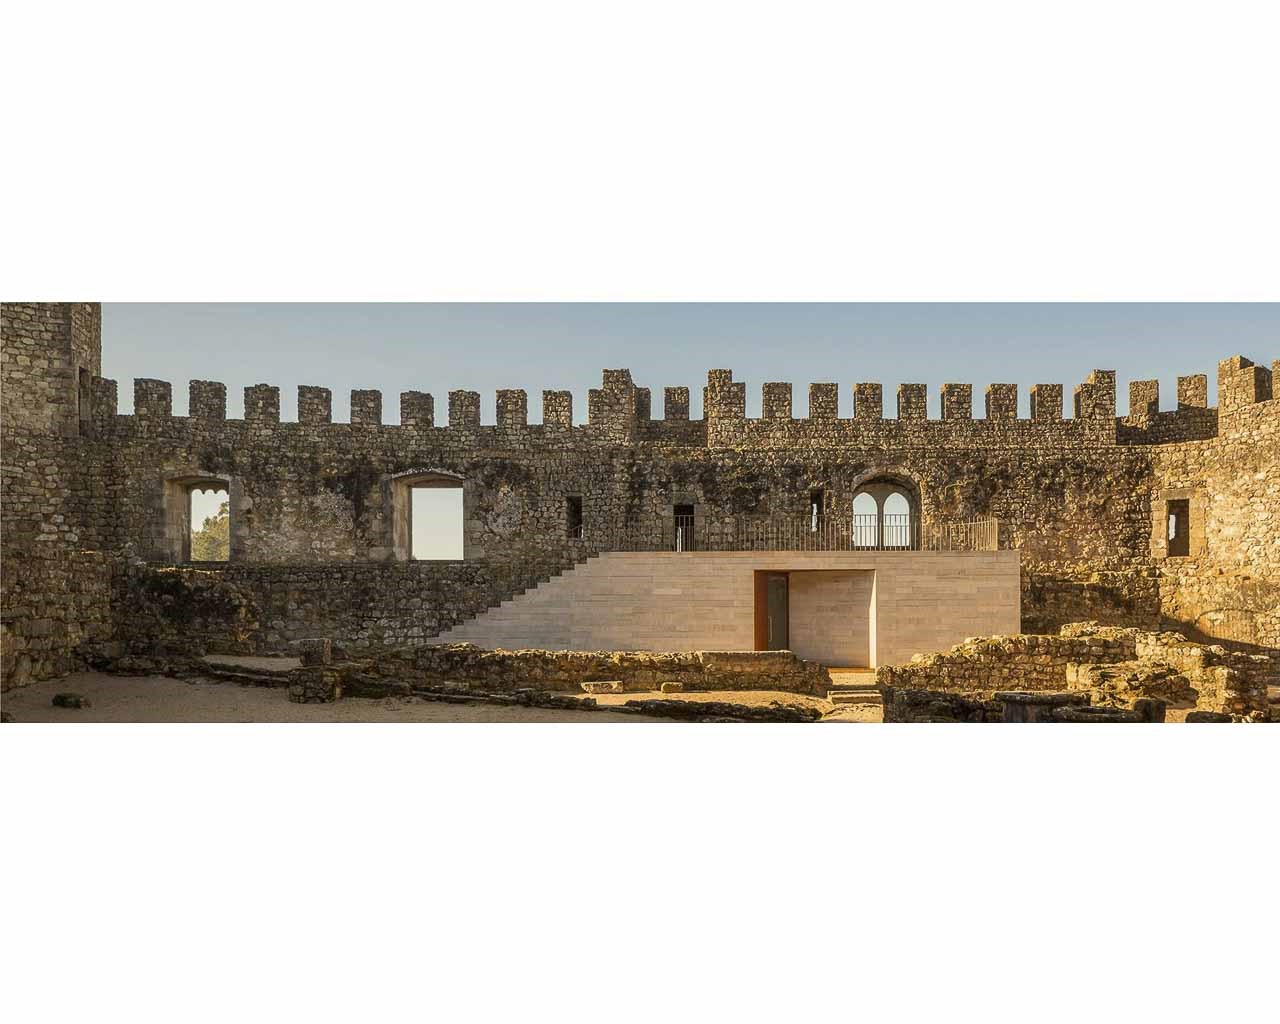 Castelo de Pombal